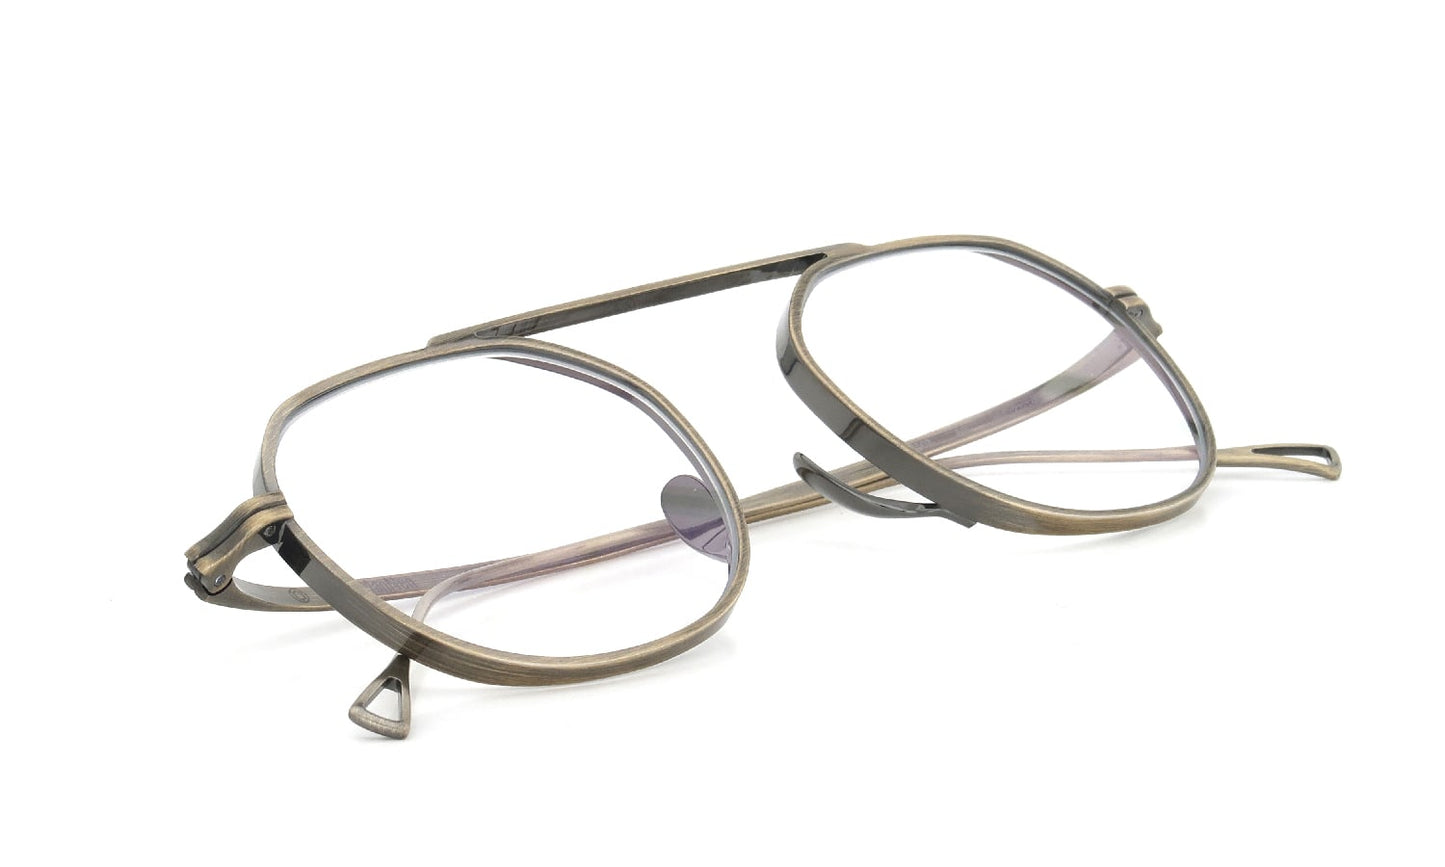 KameManNen Eyeglass Frame 9503 AG